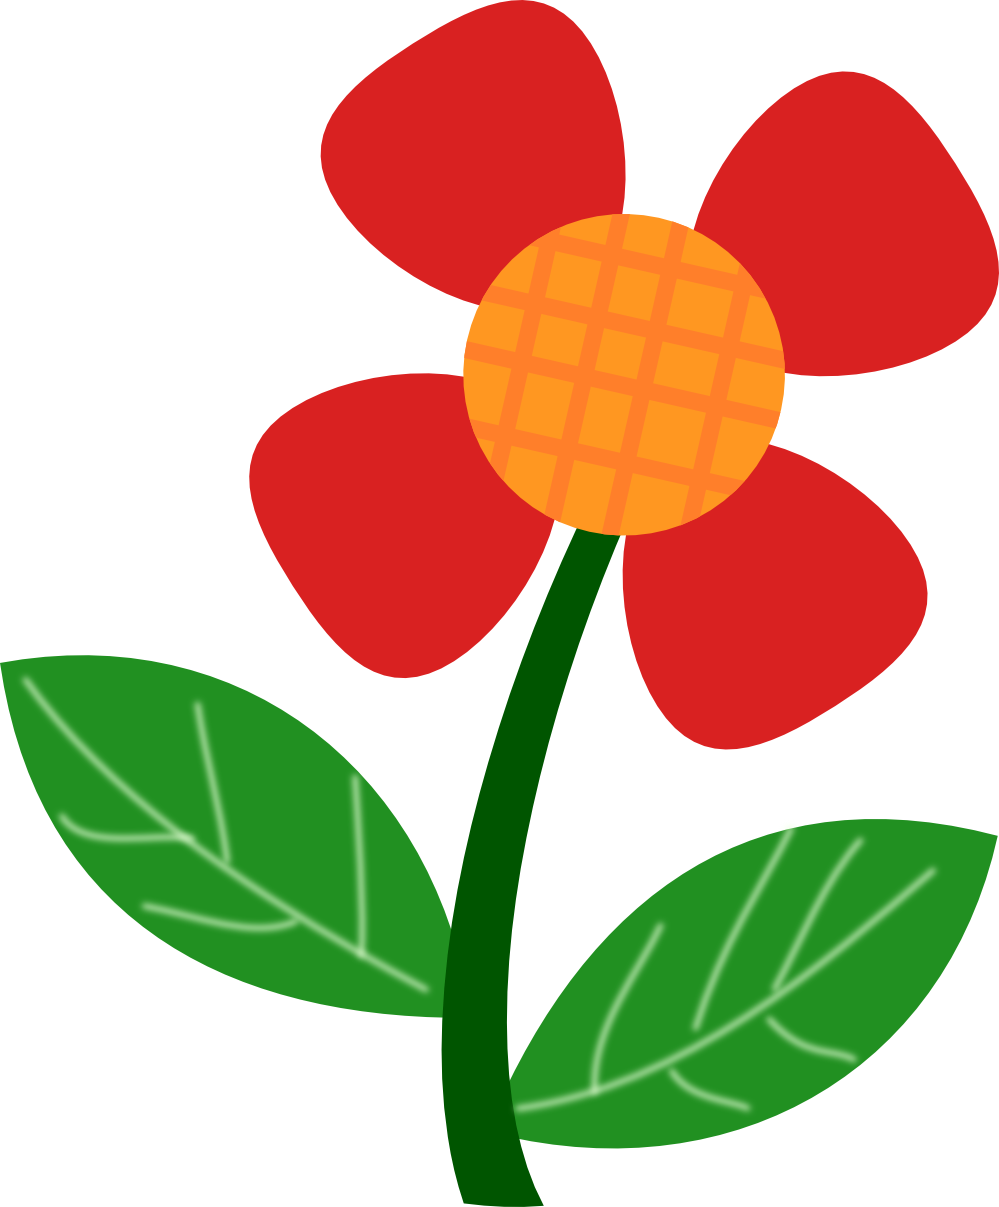 Red Flower Clipart - cliparta - Red Flower Clipart